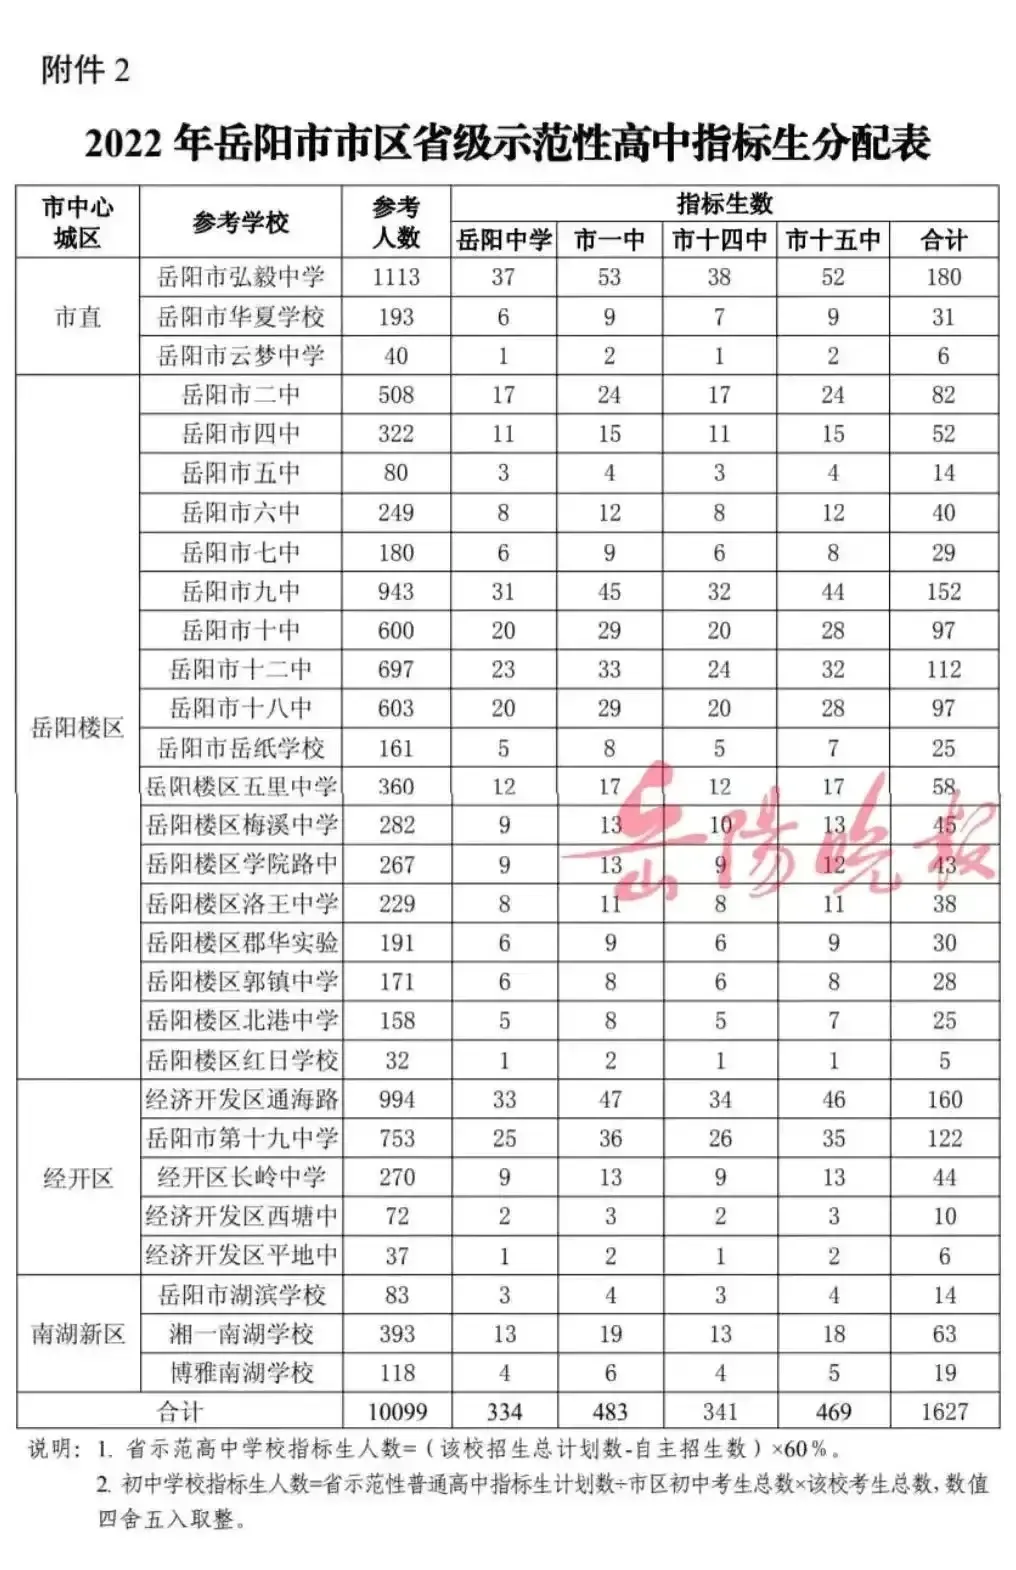 湖南第二大城市岳阳市区初中大洗牌，民办学校排名领先公办学校